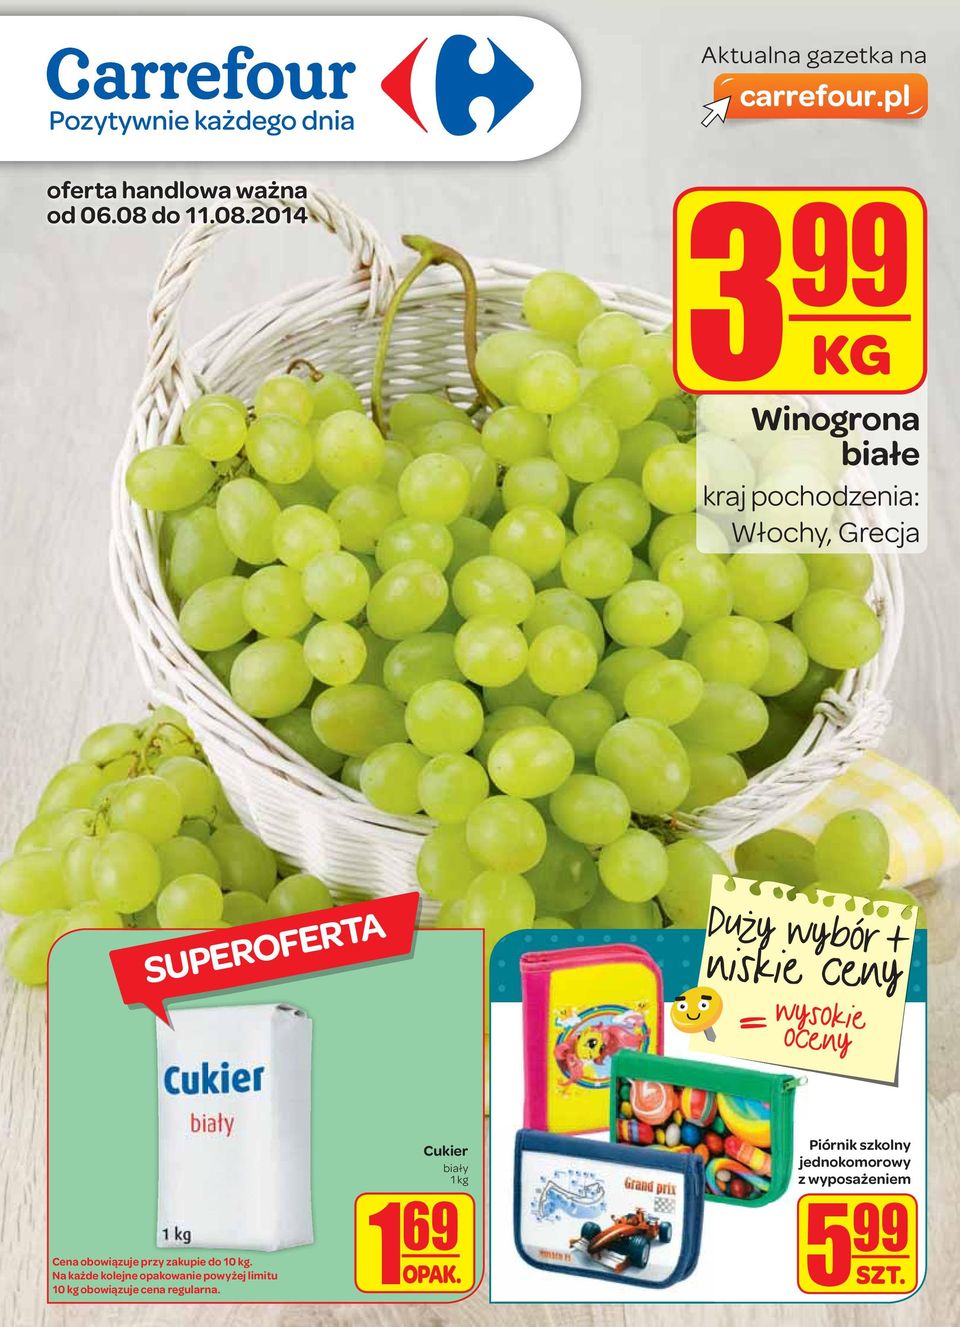 2014 3 99 Winogrona białe kraj pochodzenia: Włochy, Grecja Duży wybór t niskie ceny